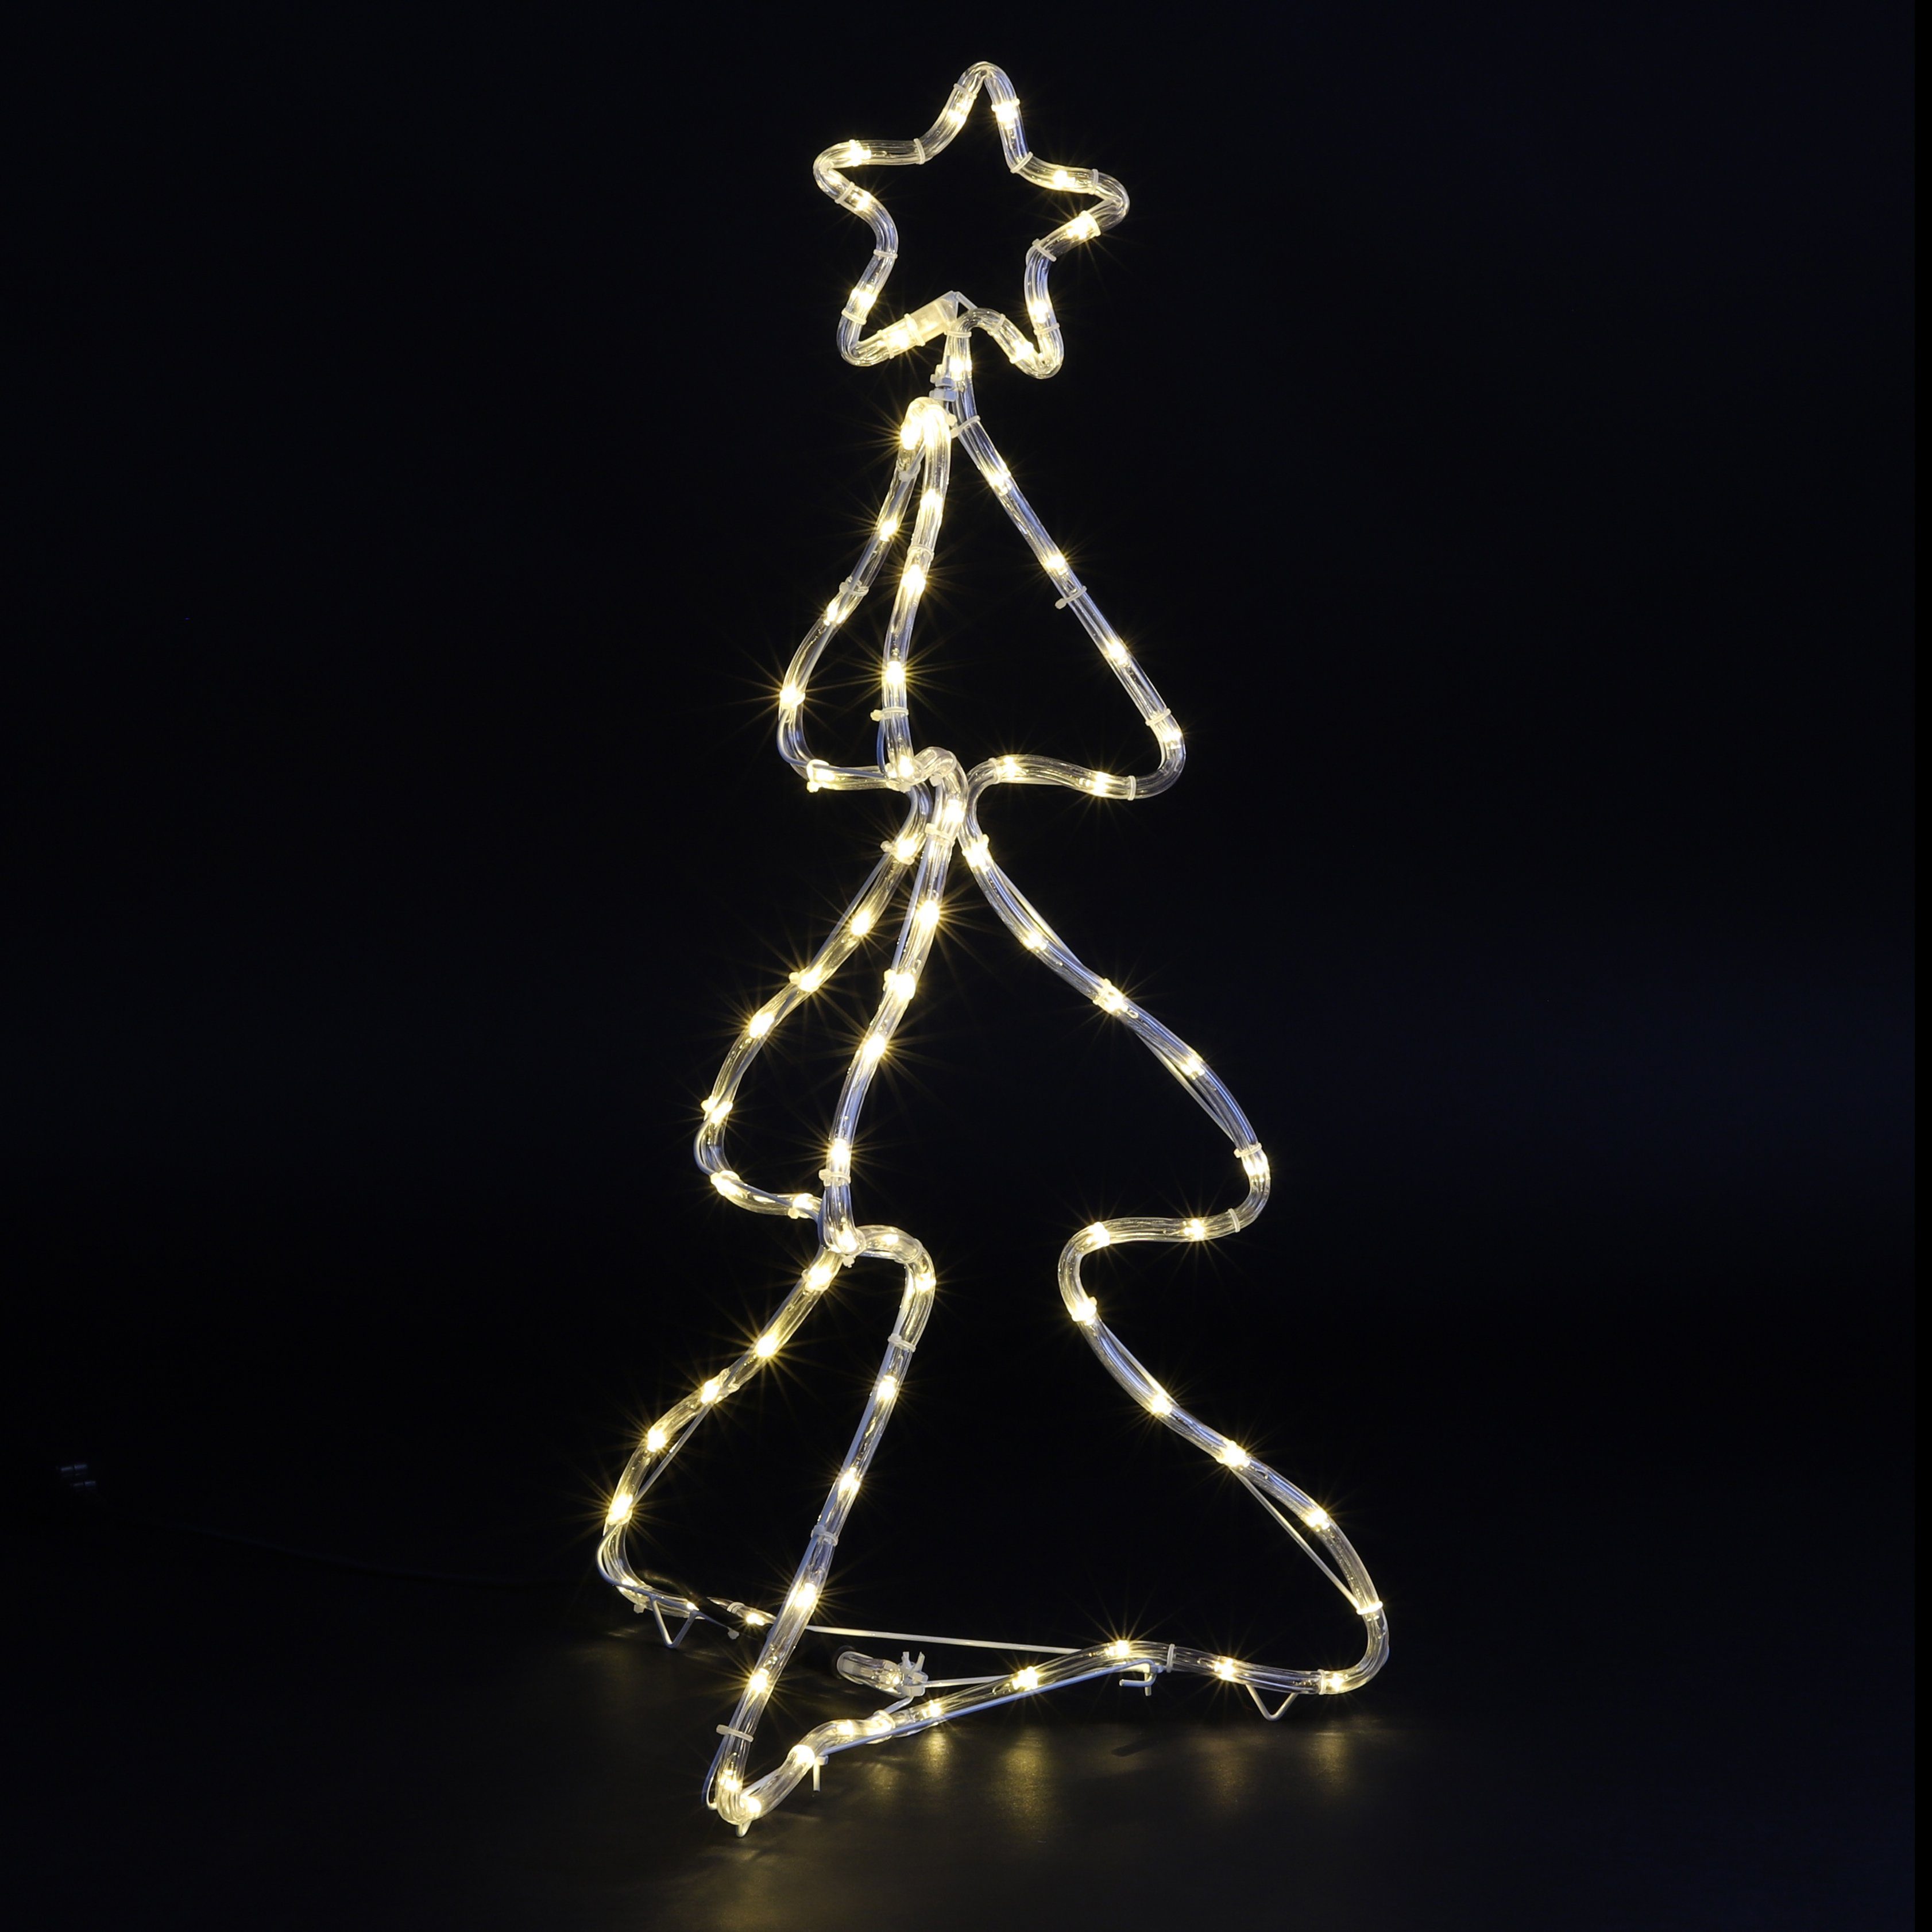 Haushalt International Künstlicher Weihnachtsbaum mit Sternspitze 76cm, Tannenbaum, 80 LED warmweiss, Innen und Außen | Künstliche Weihnachtsbäume